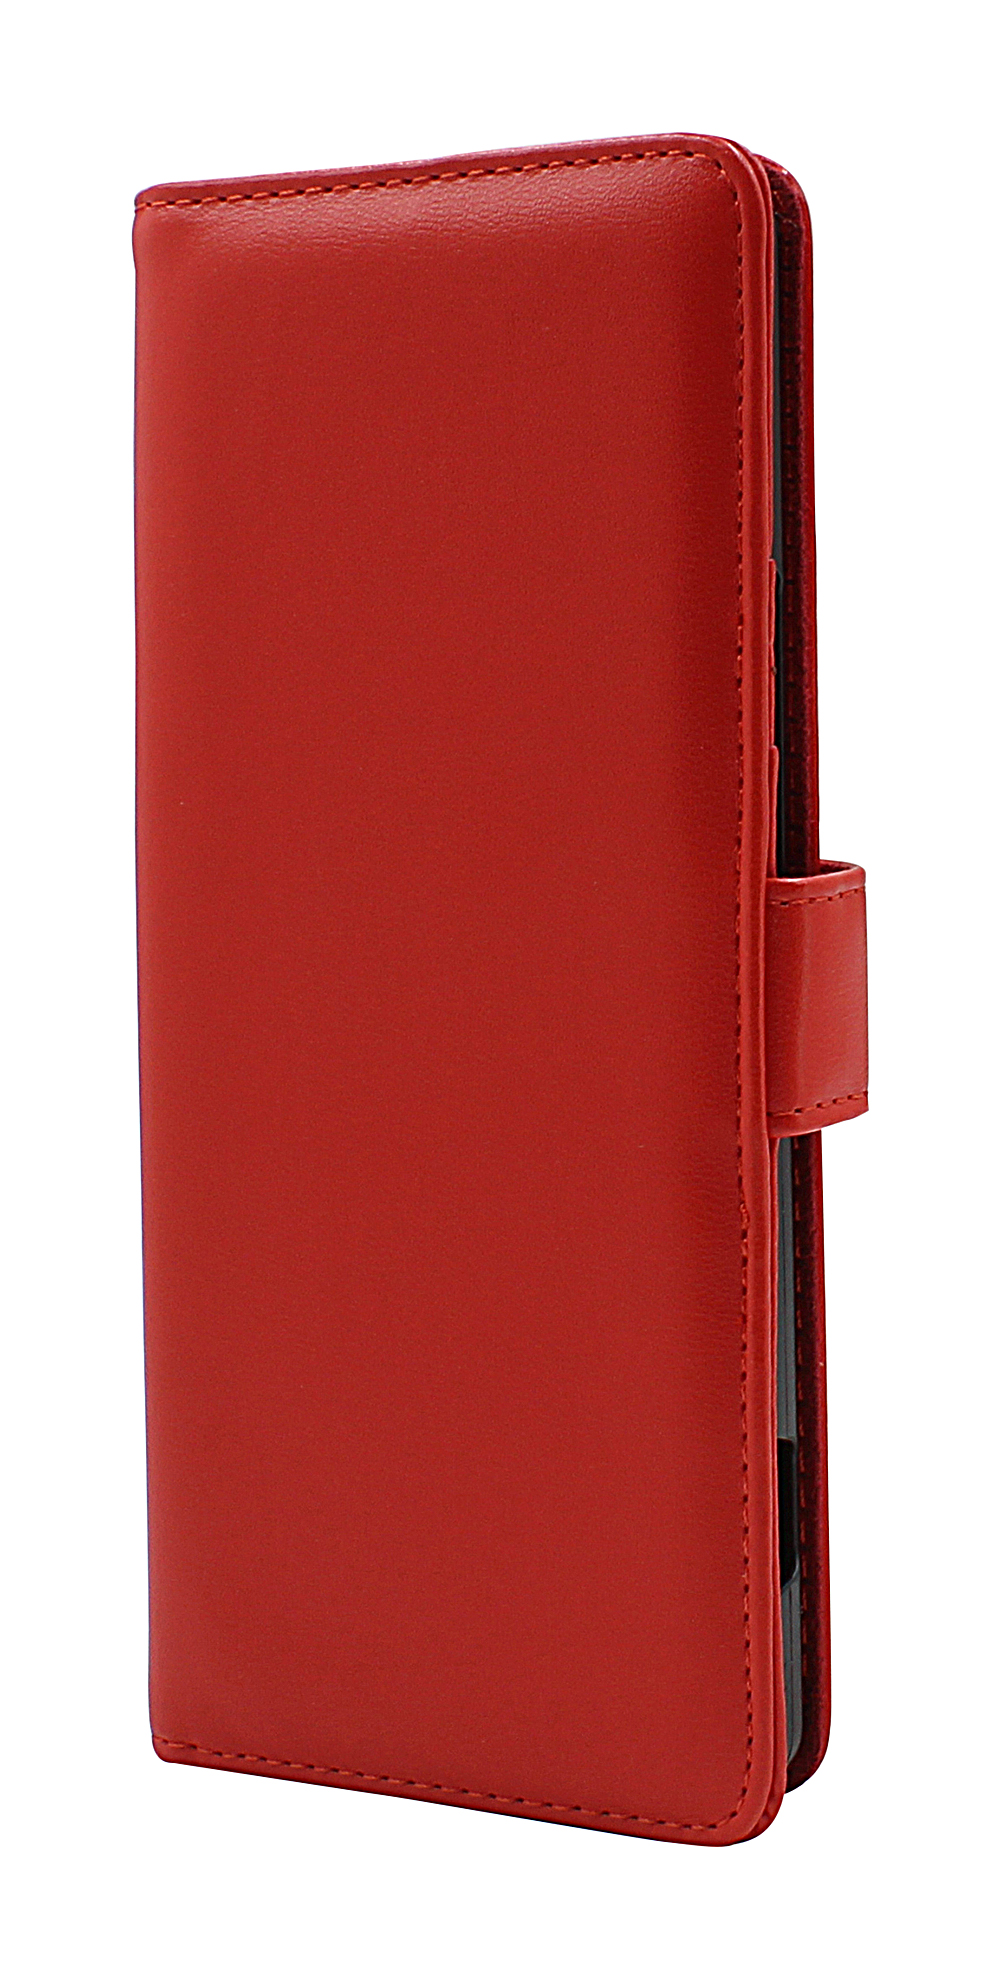 CoverInSkimblocker Plnboksfodral Sony Xperia 1 II (XQ-AT51)